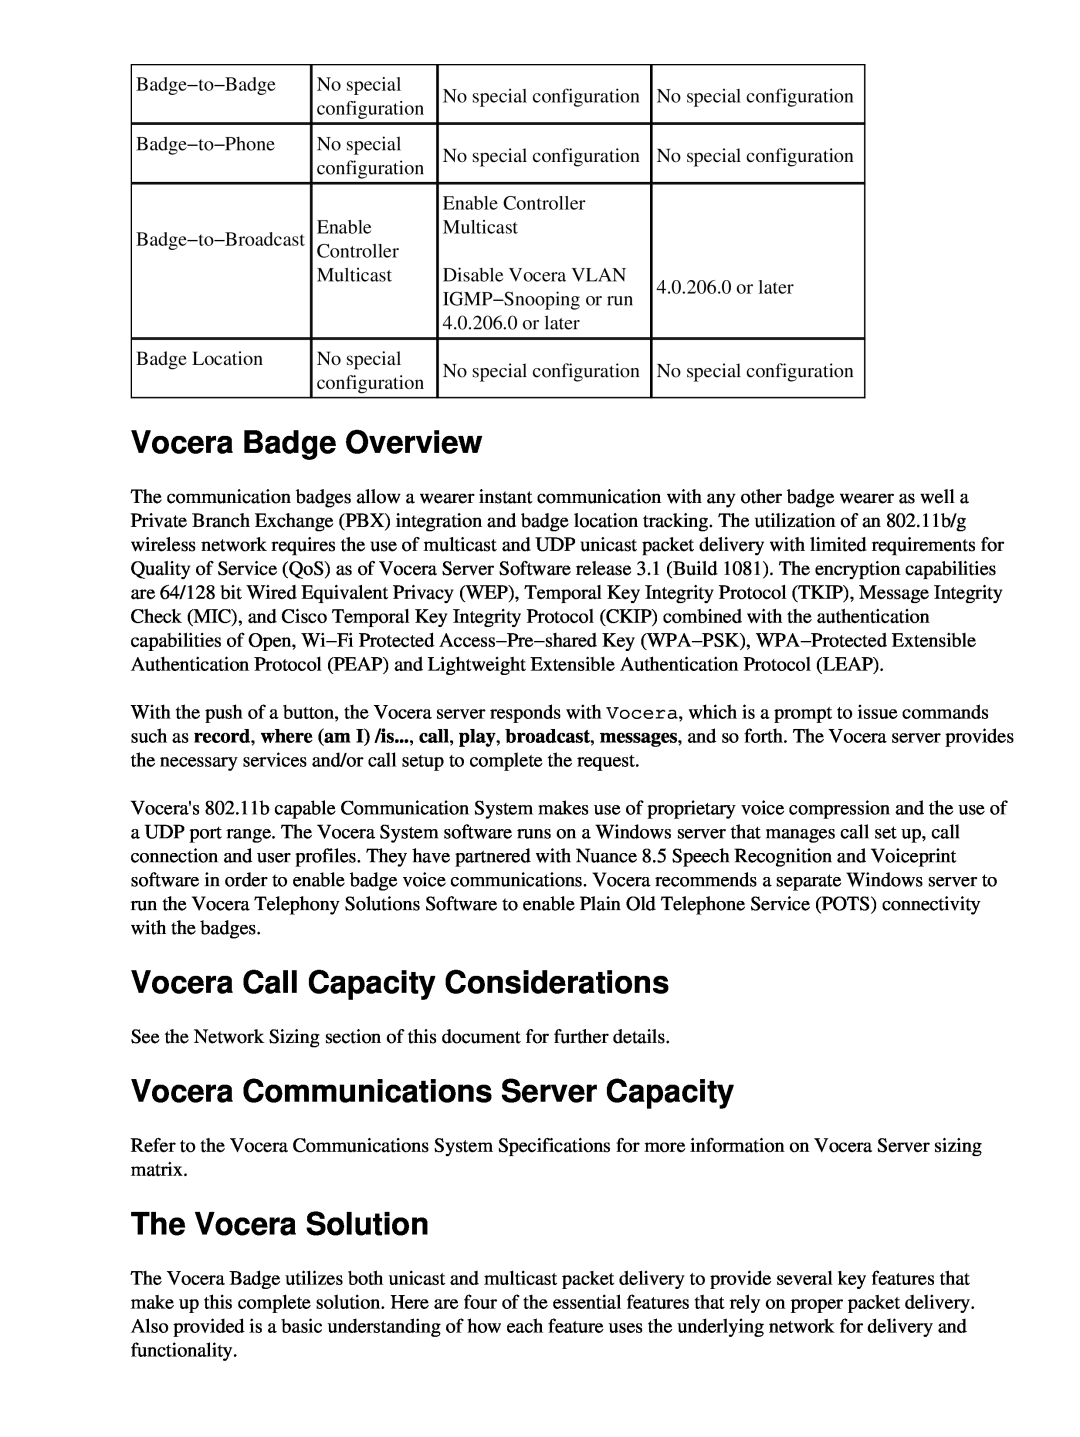 Cisco Systems 71642 Vocera Badge Overview, Vocera Call Capacity Considerations, Vocera Communications Server Capacity 